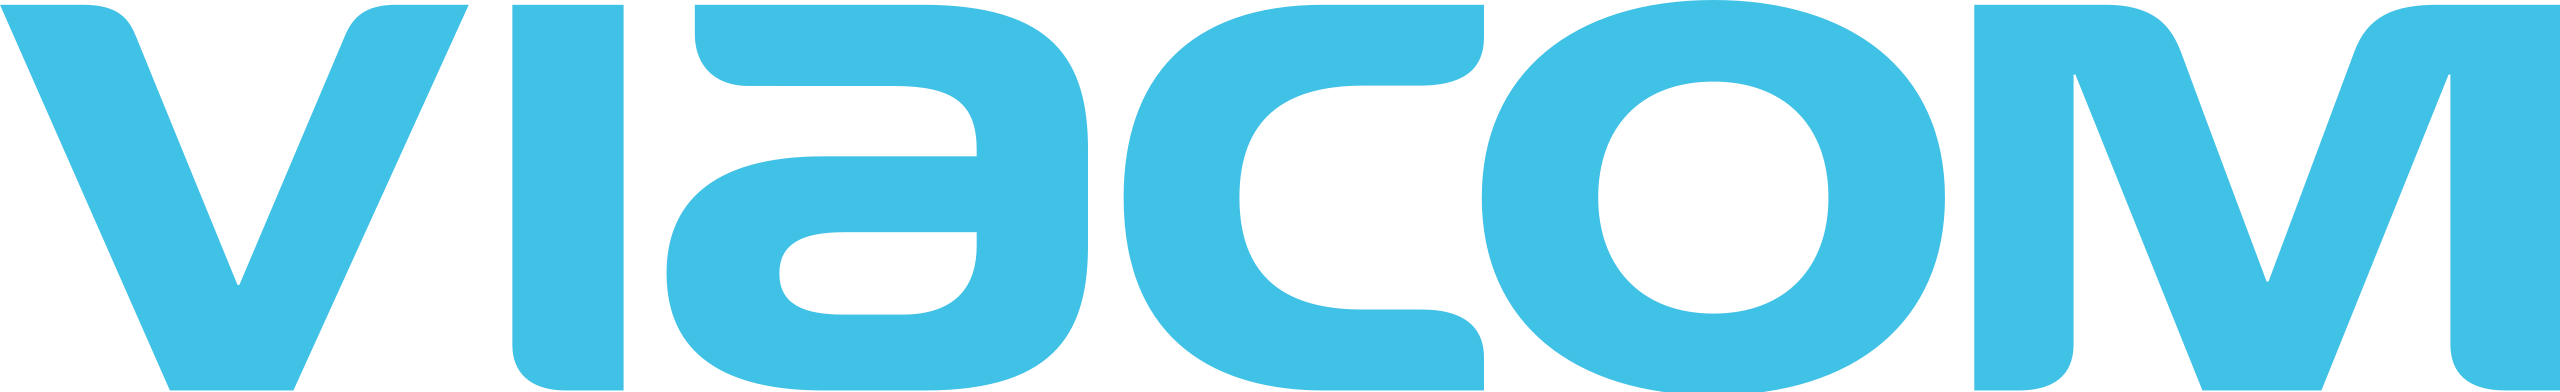 Viacom blue logo